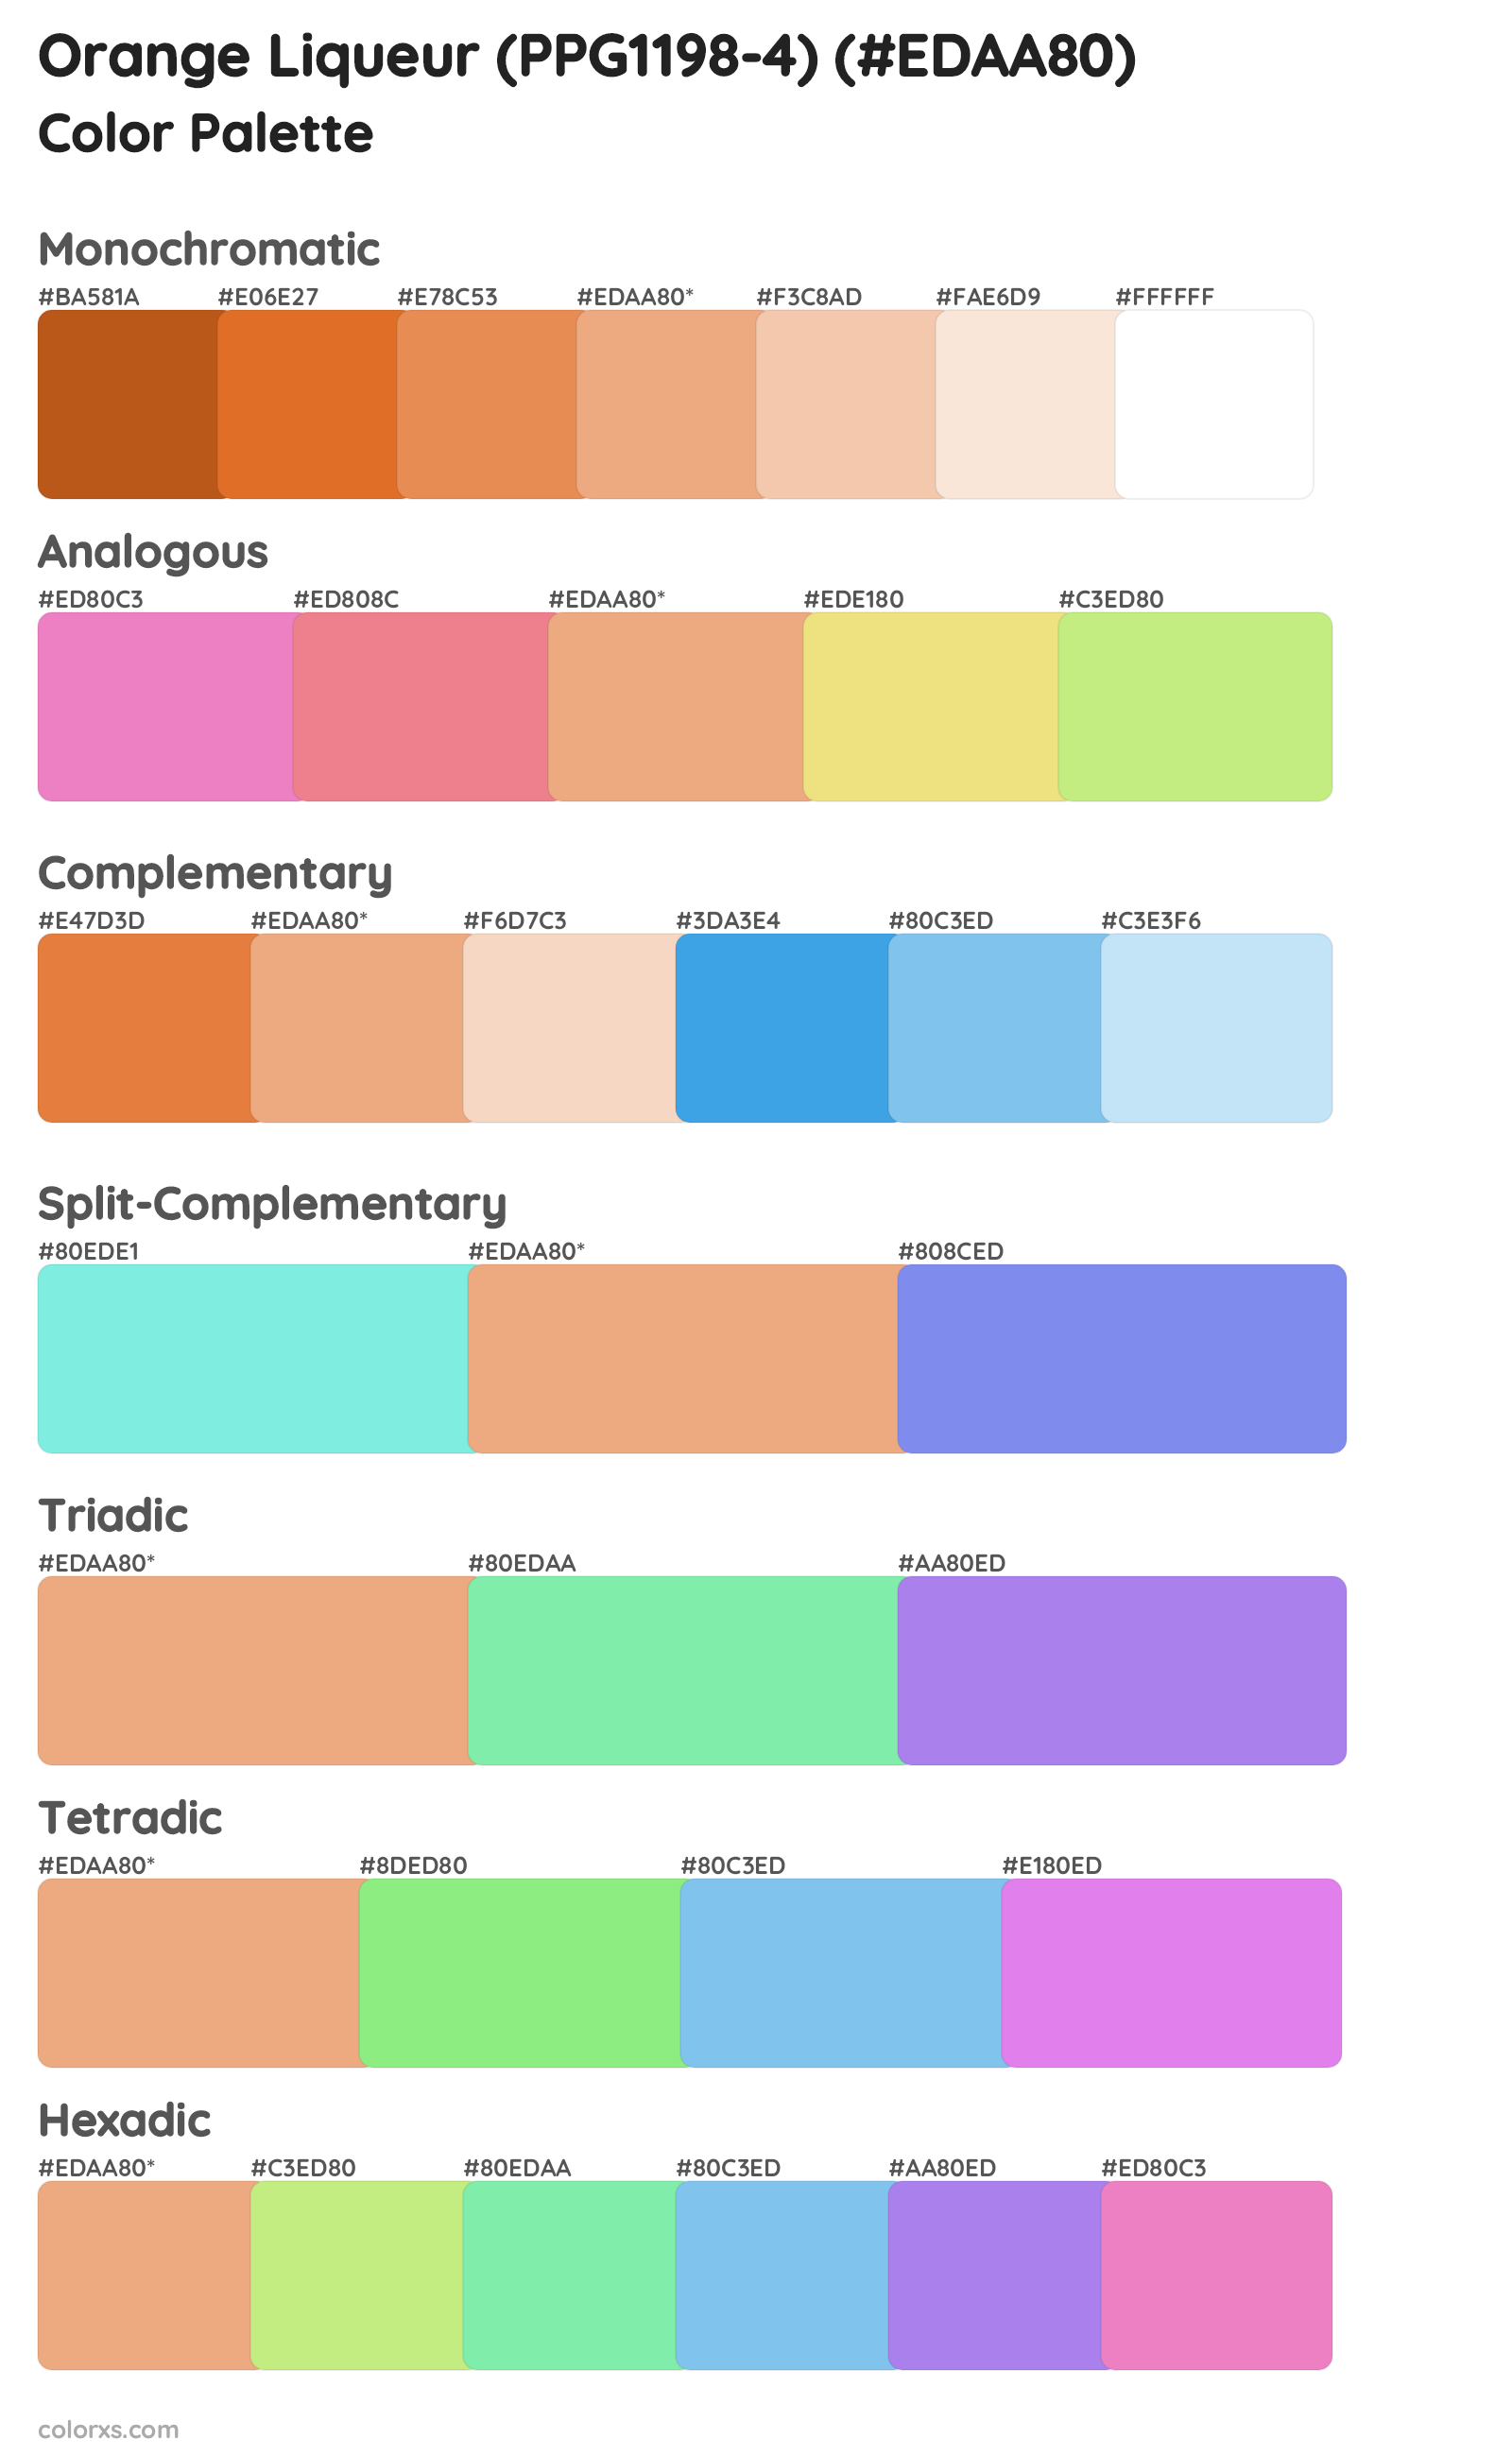 Orange Liqueur (PPG1198-4) Color Scheme Palettes